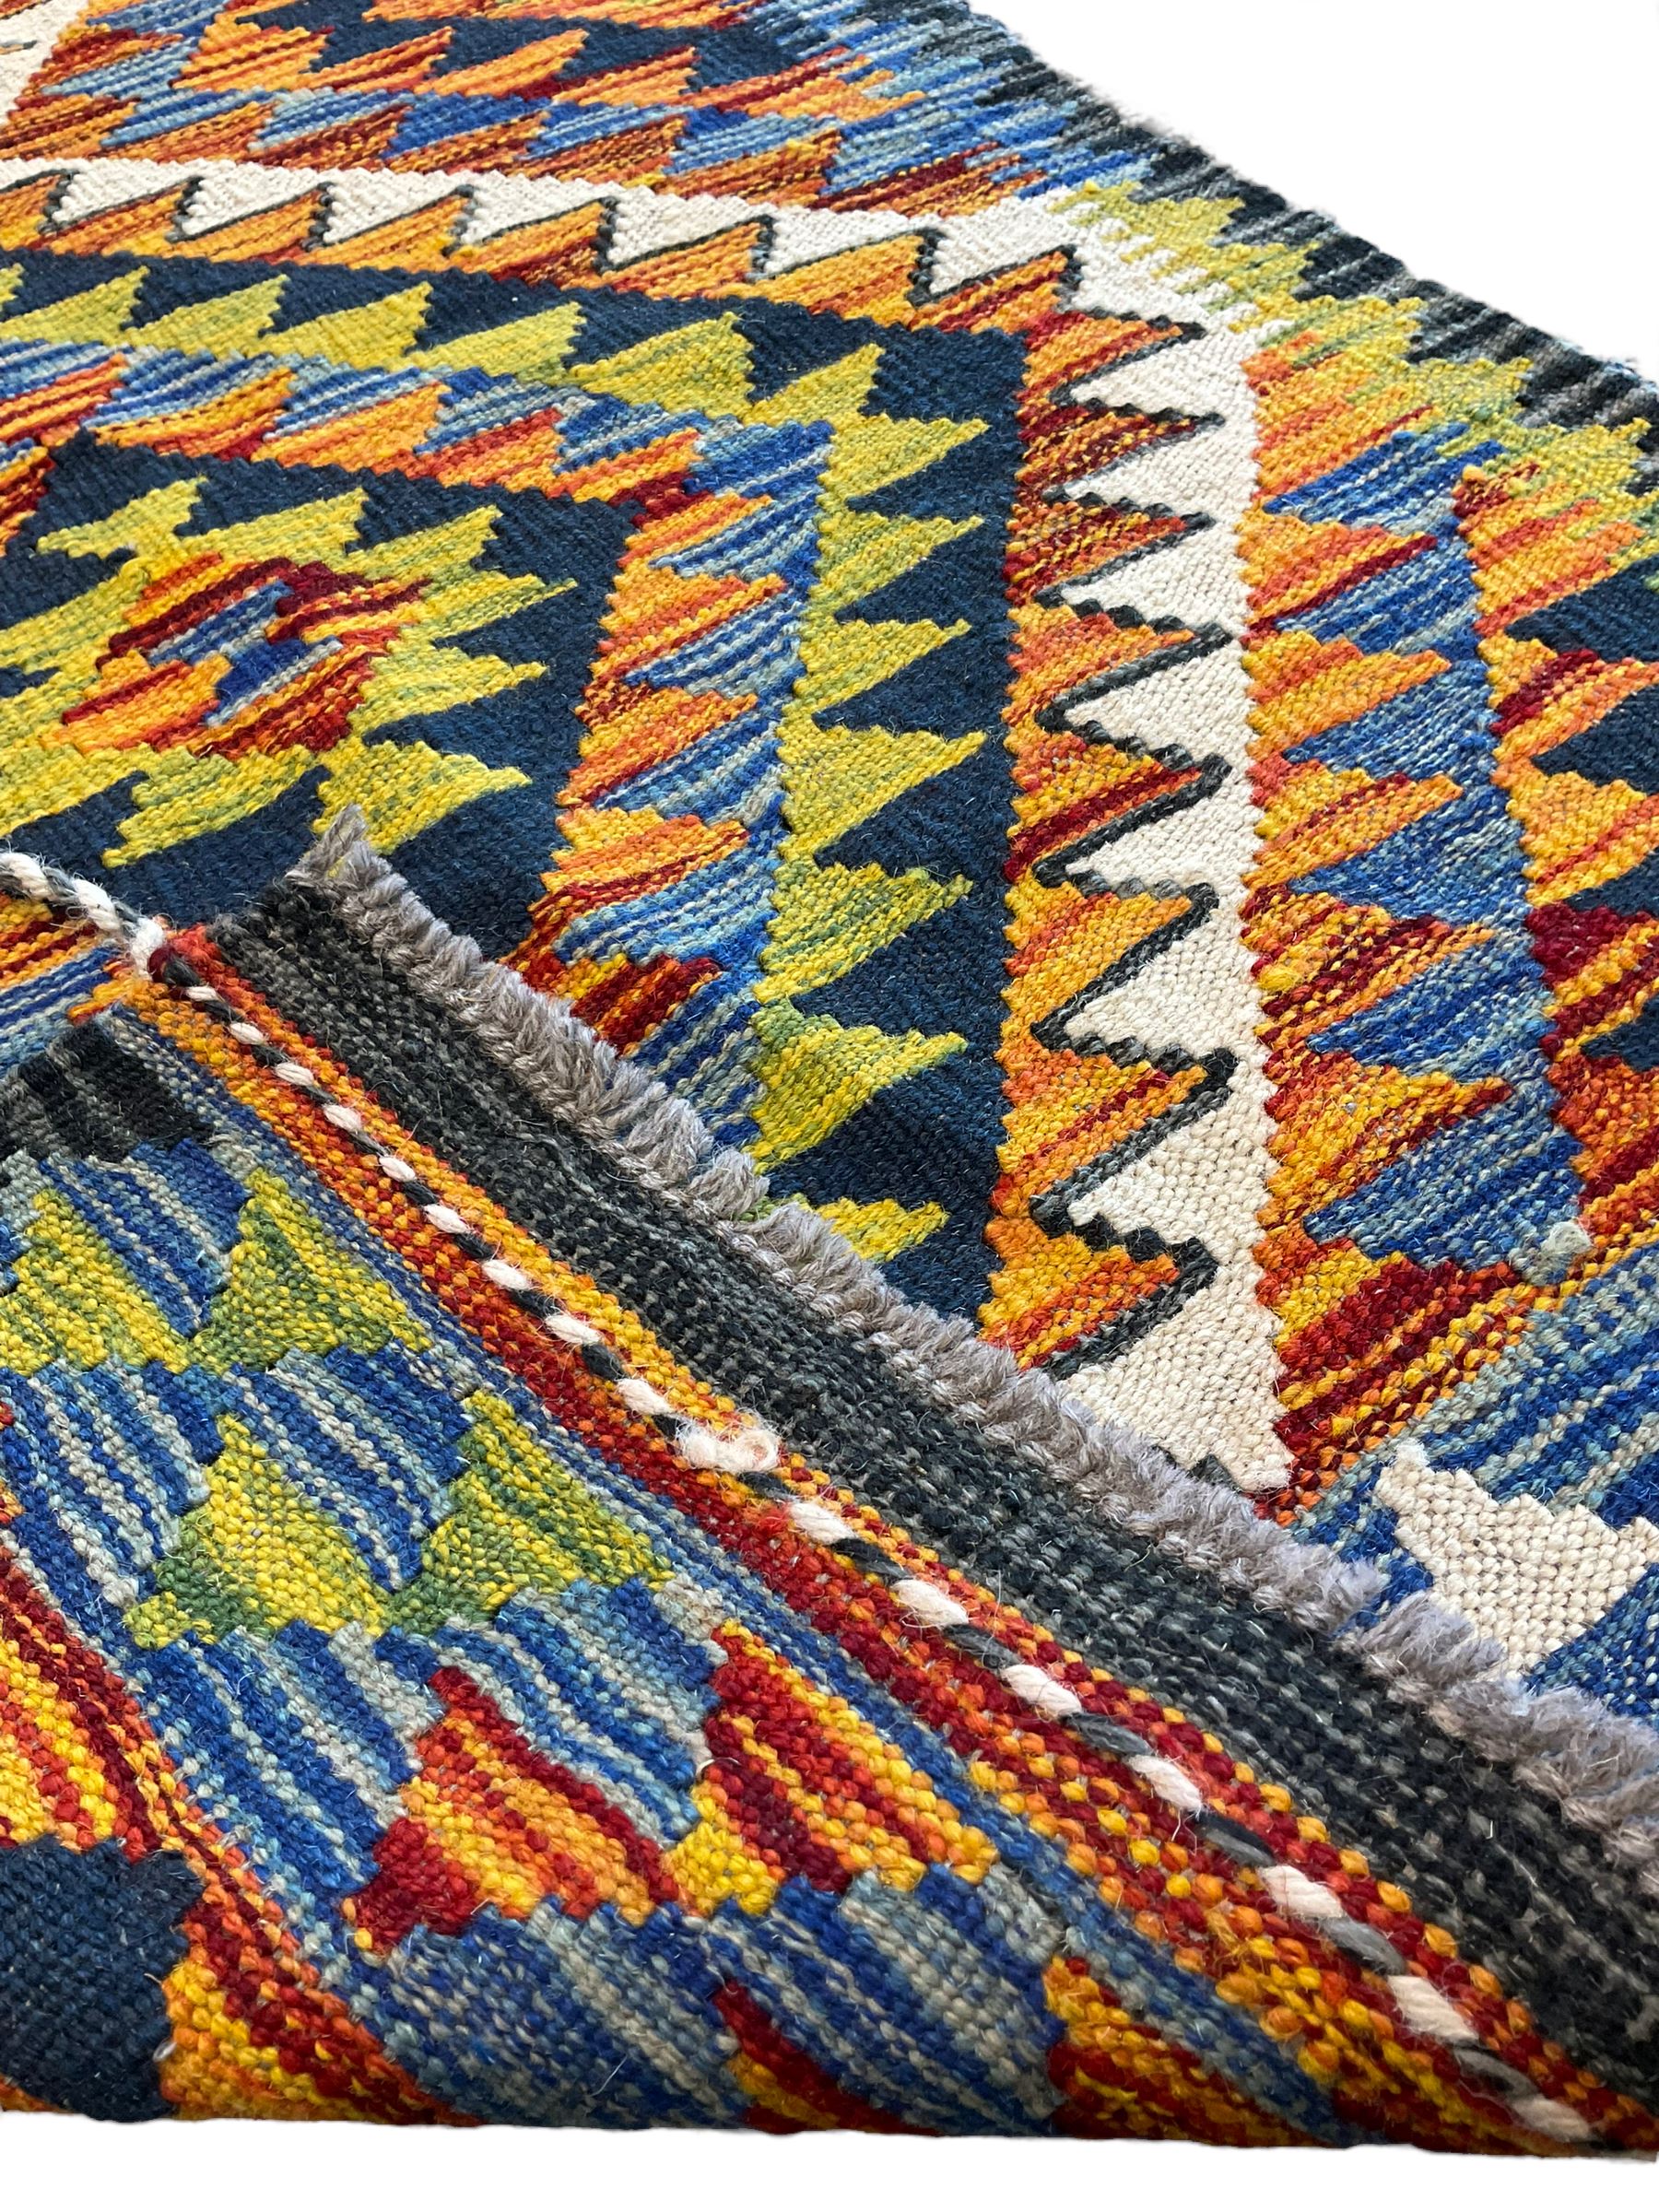 Chobi Kilim multi-colour runner rug - Image 4 of 4